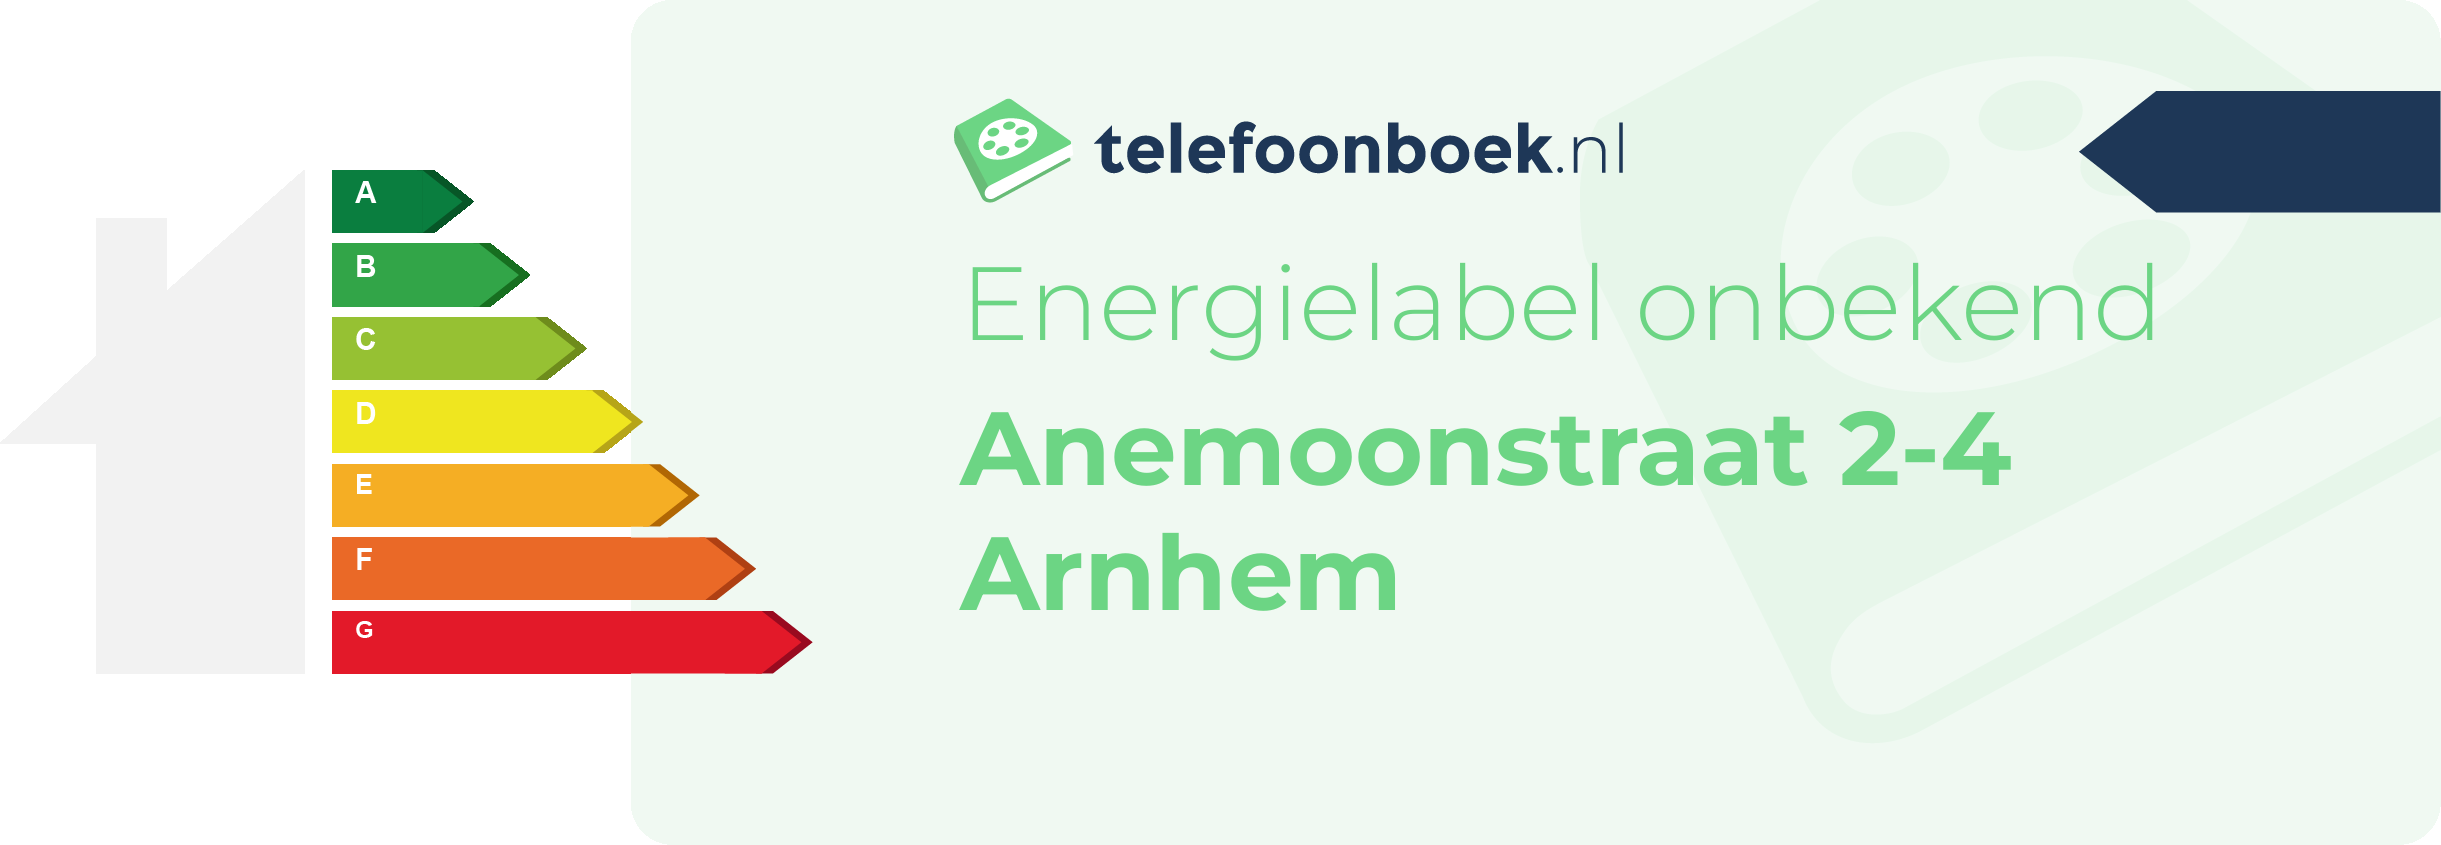 Energielabel Anemoonstraat 2-4 Arnhem